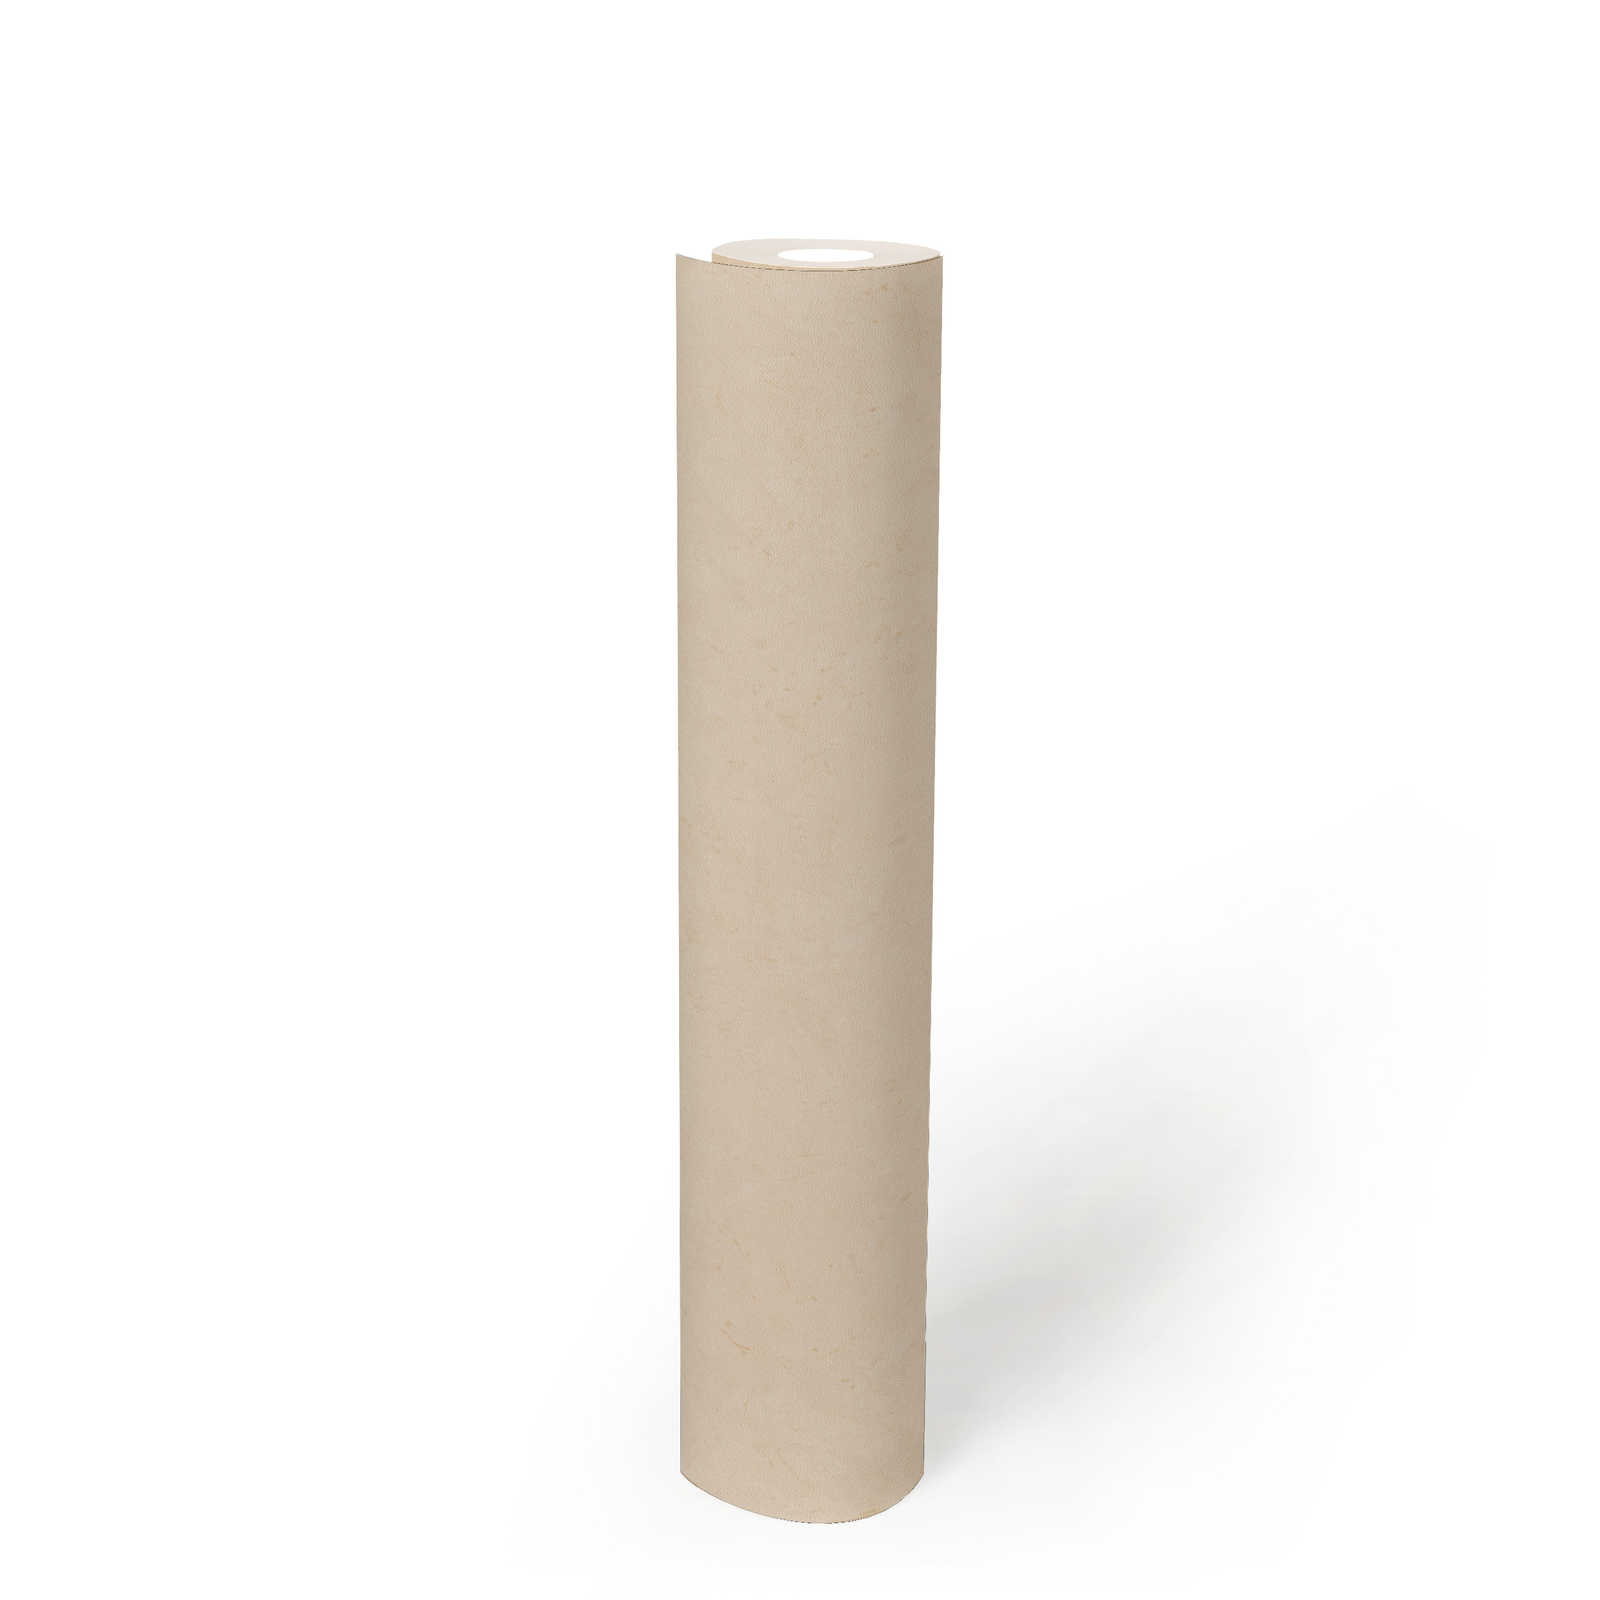             Eenheidsbehang met discrete betonlook - beige, crème
        